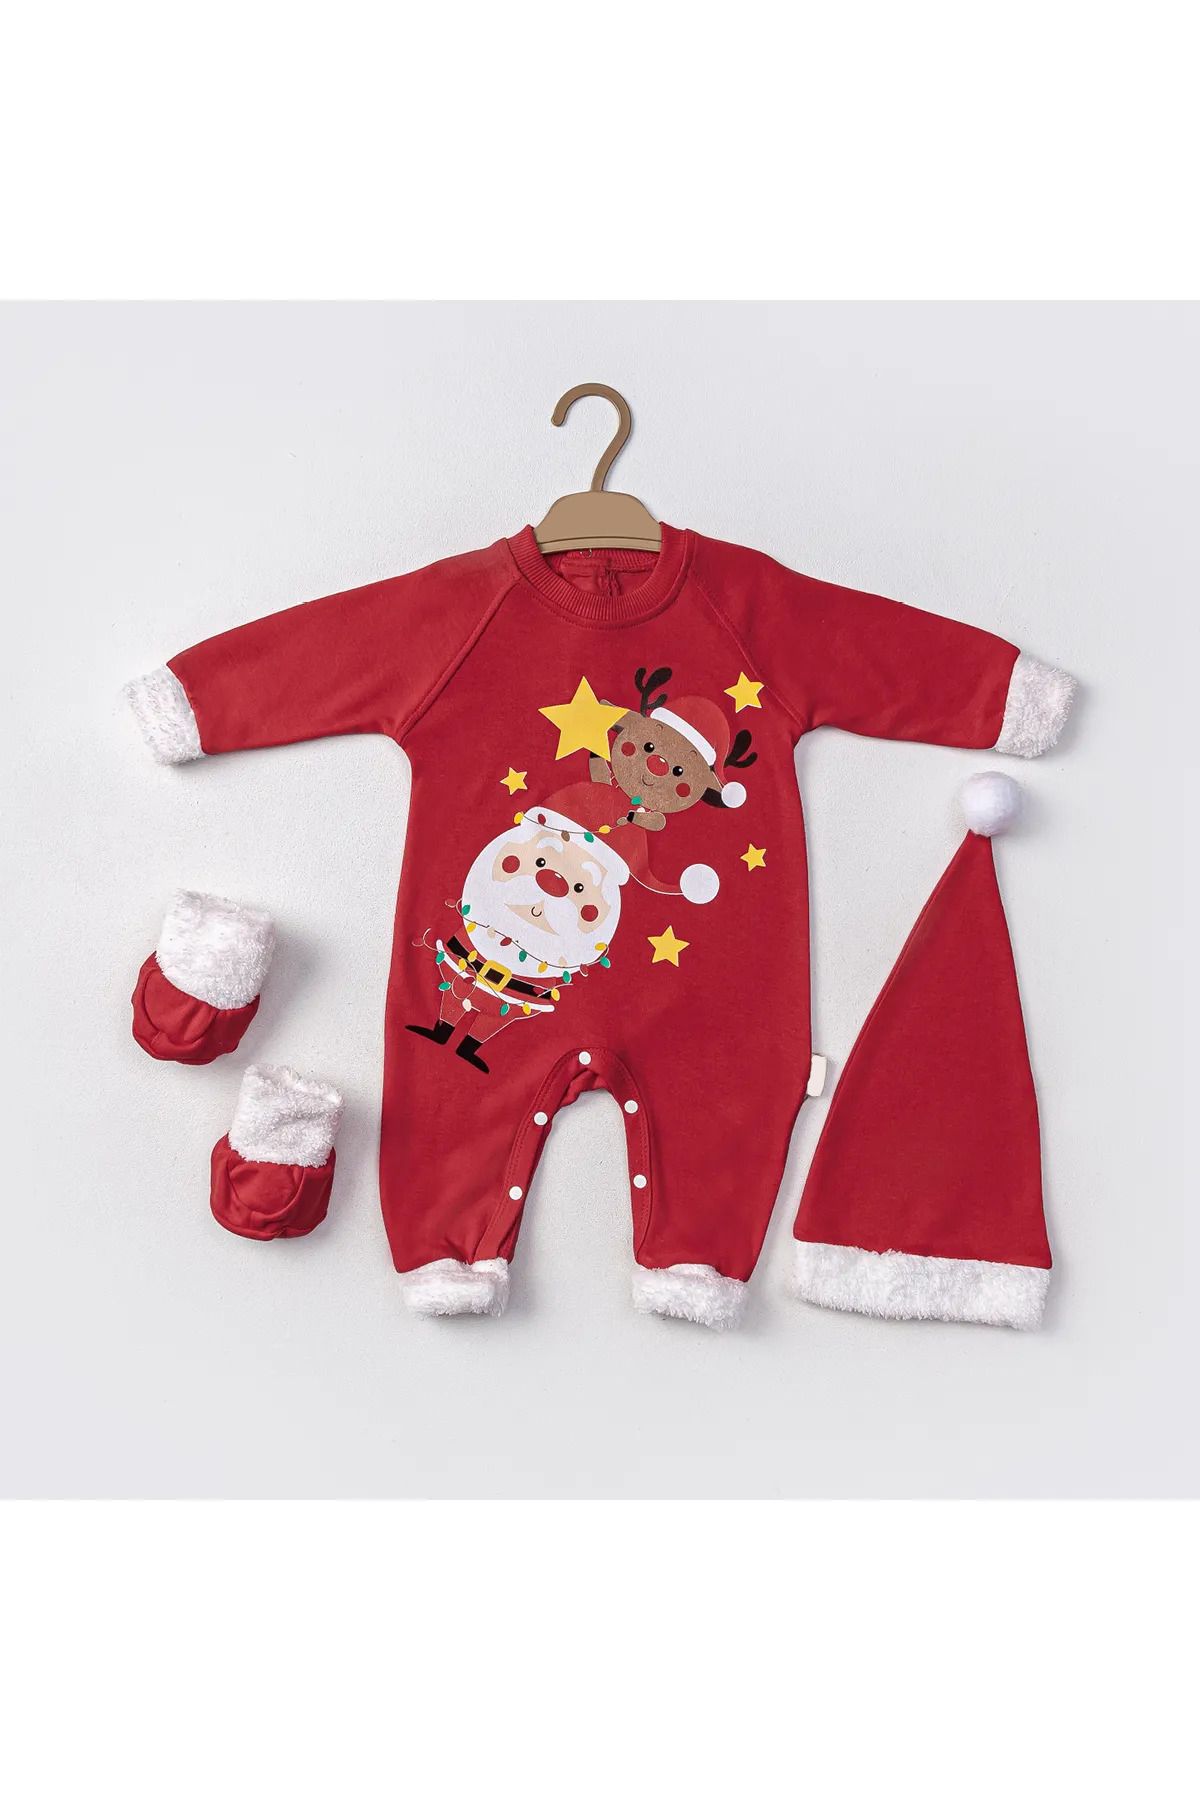 PODIUM GYM Bebek Yeni Sezon Yılbaşı Temalı Noel Baba Baskılı Patik Ve Şapkalı 3 Lü Set Tulum